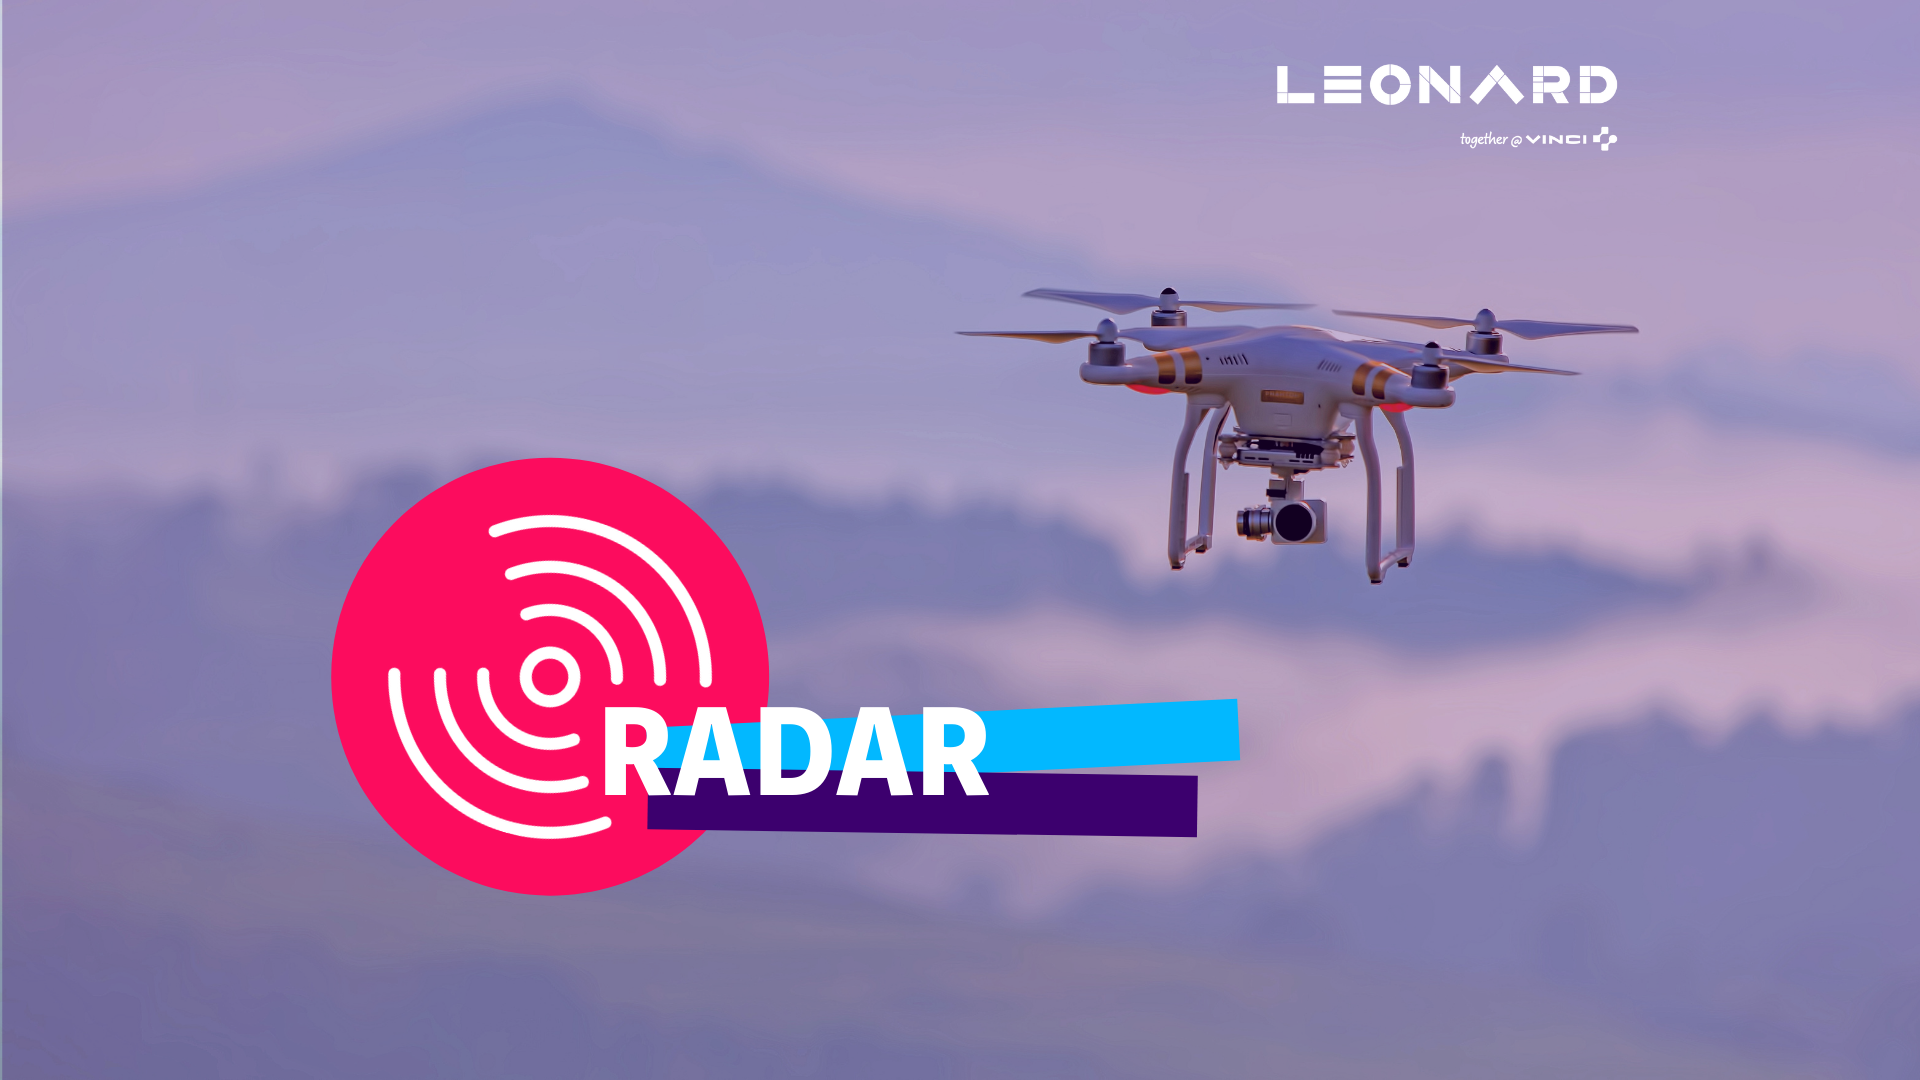 Radar – Notre sélection de business innovants #71